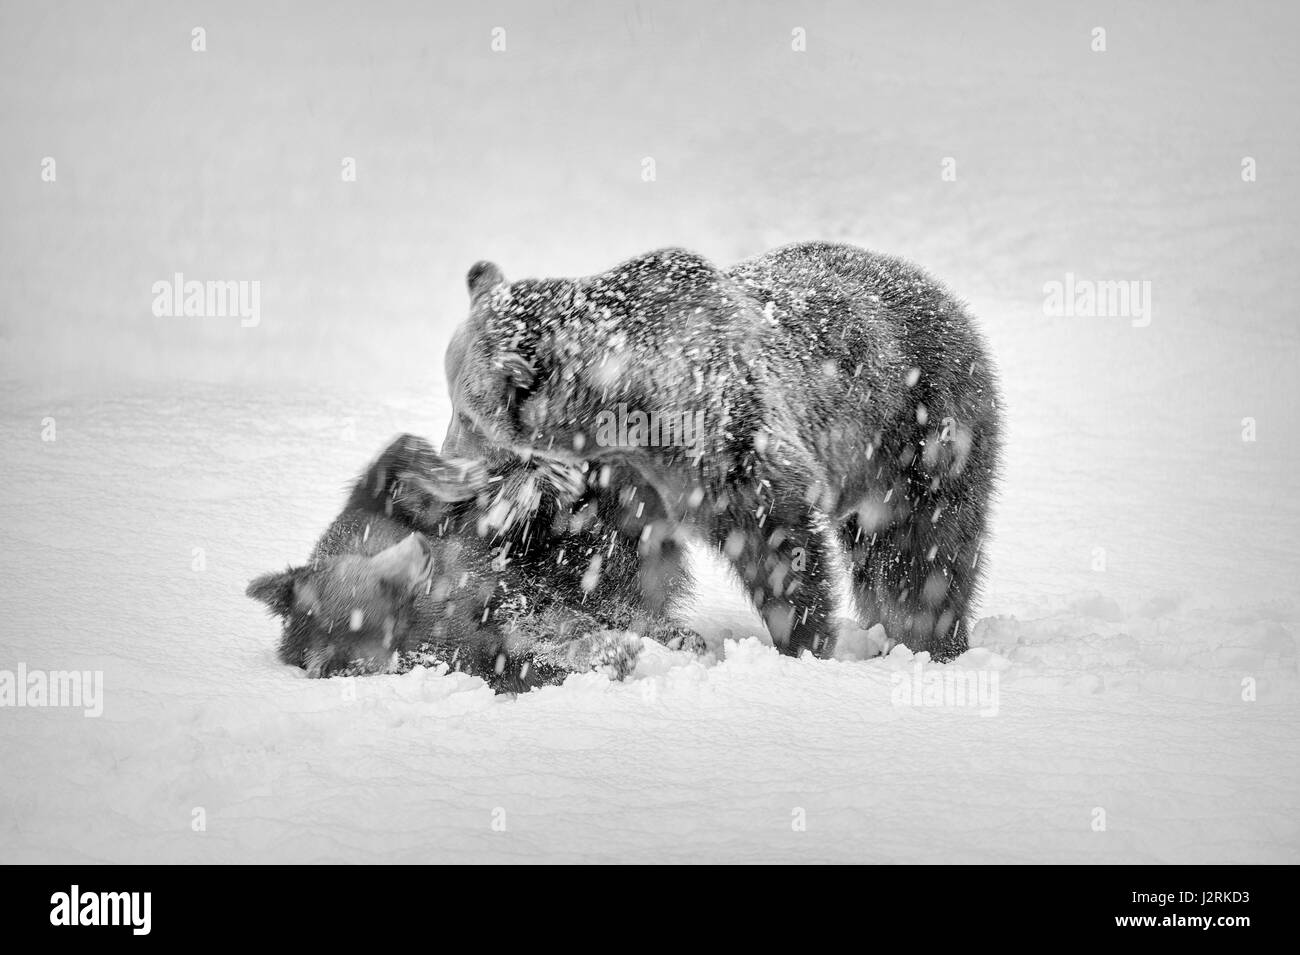 Solo para mujeres adultas euroasiática y un cachorro de oso pardo (Ursus arctos) descontrol en una tormenta de nieve en invierno. (Bellas Artes, High Key, Blanco y negro) Foto de stock